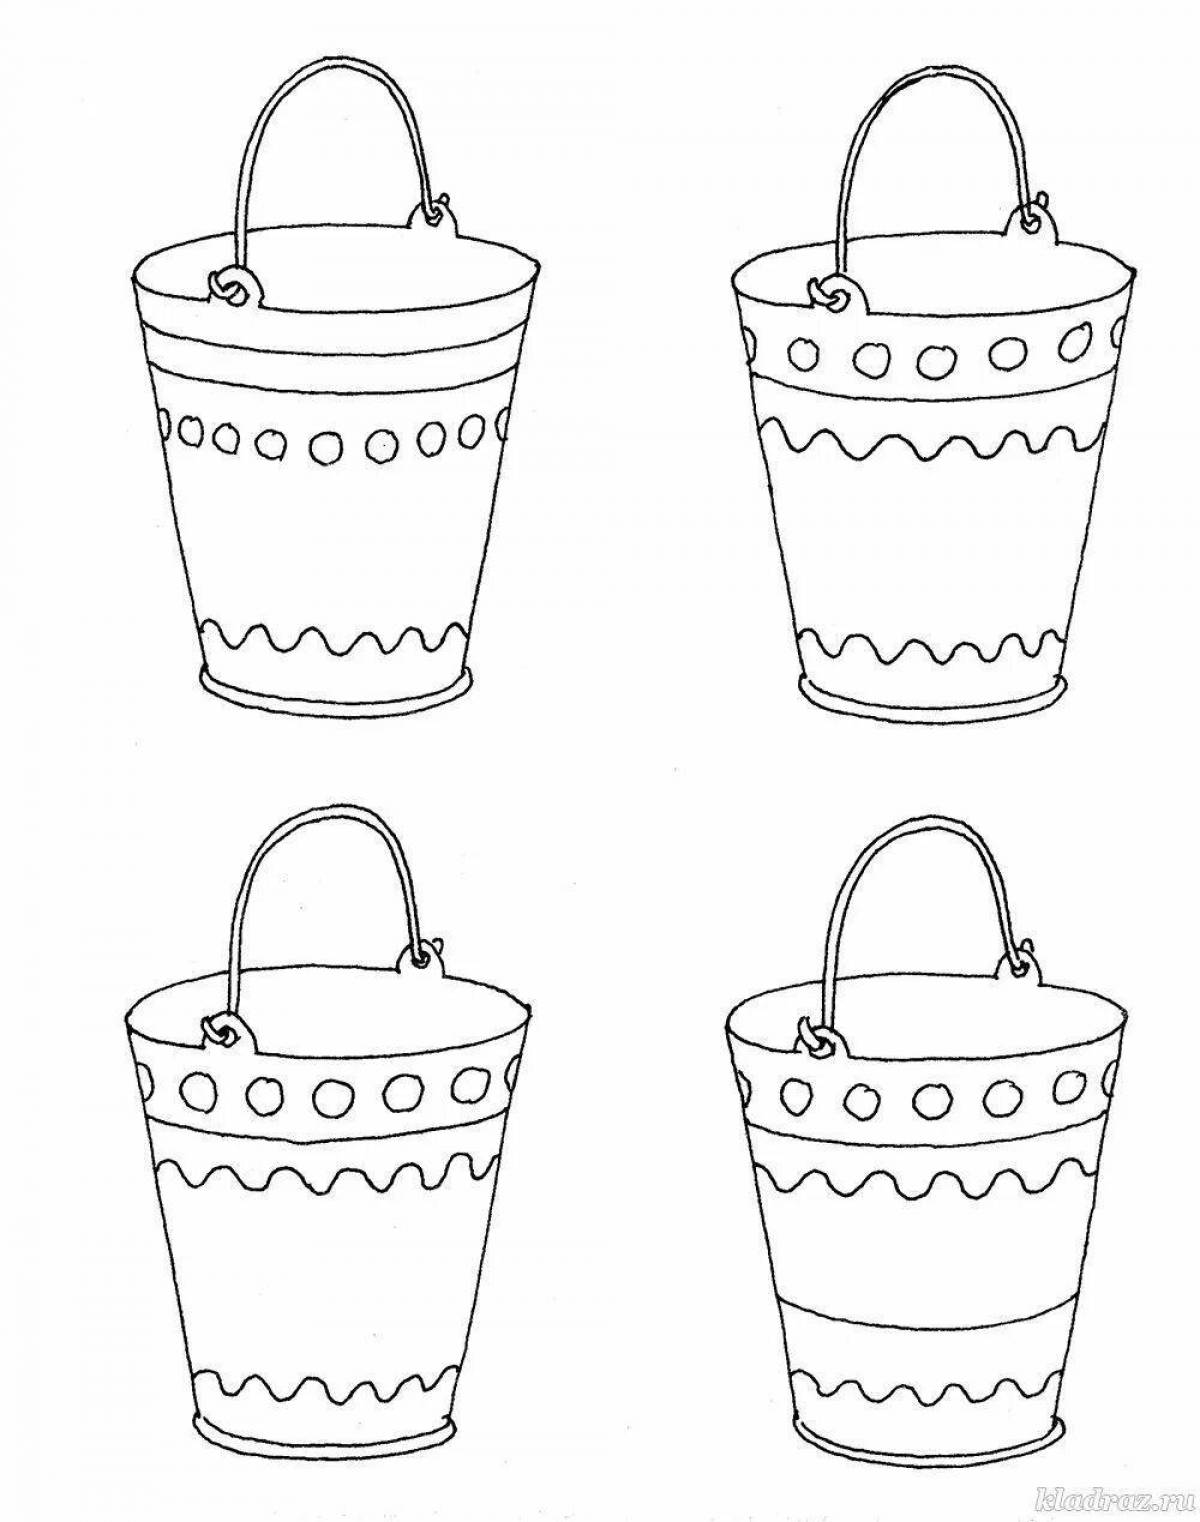 Fun pail coloring page